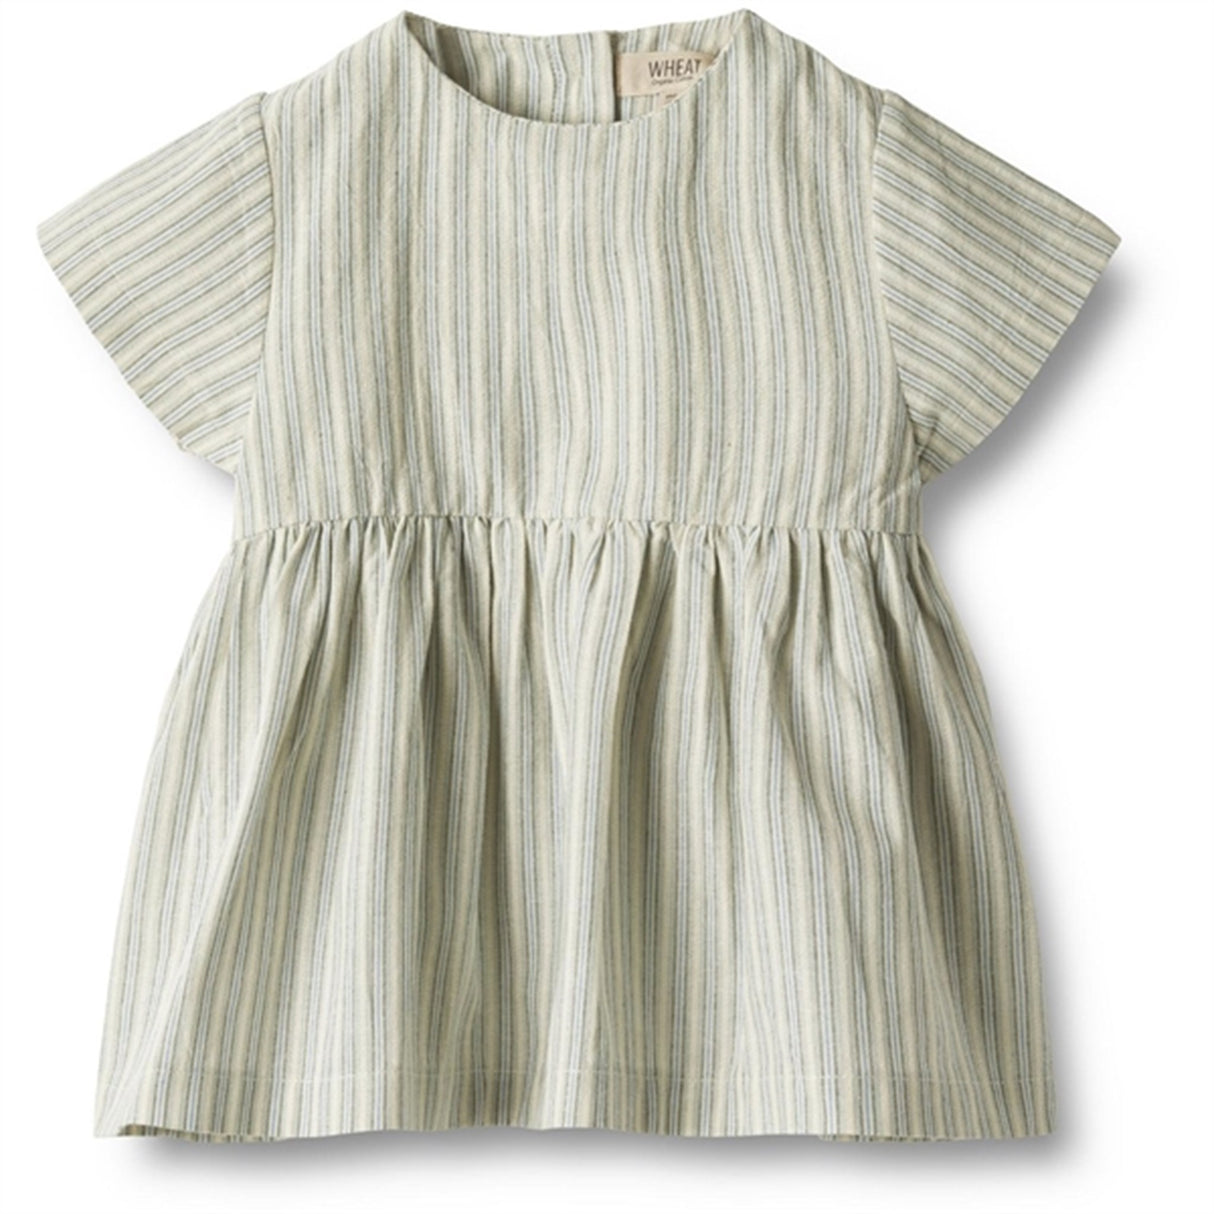 Wheat Aquablue Stripe Dress Esmaralda